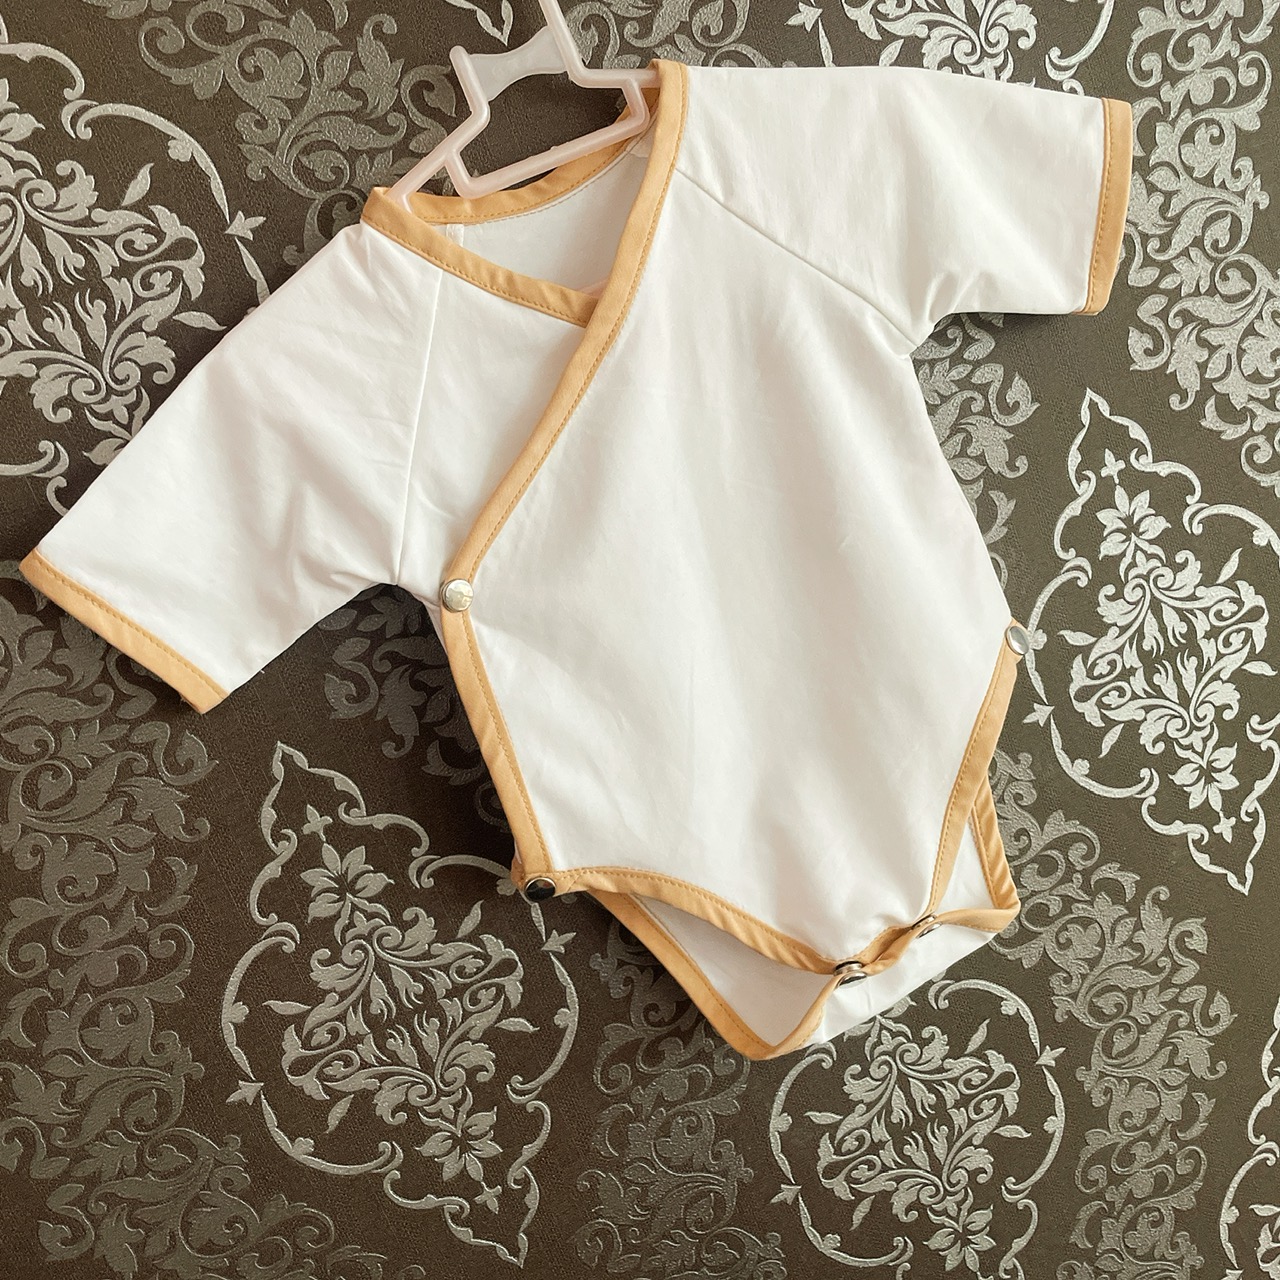 Bộ áo liền thân ngắn tay Bodysuit cho bé sơ sinh trai và gái - Chất vải cotton 4 chiều co giãn thoáng mát